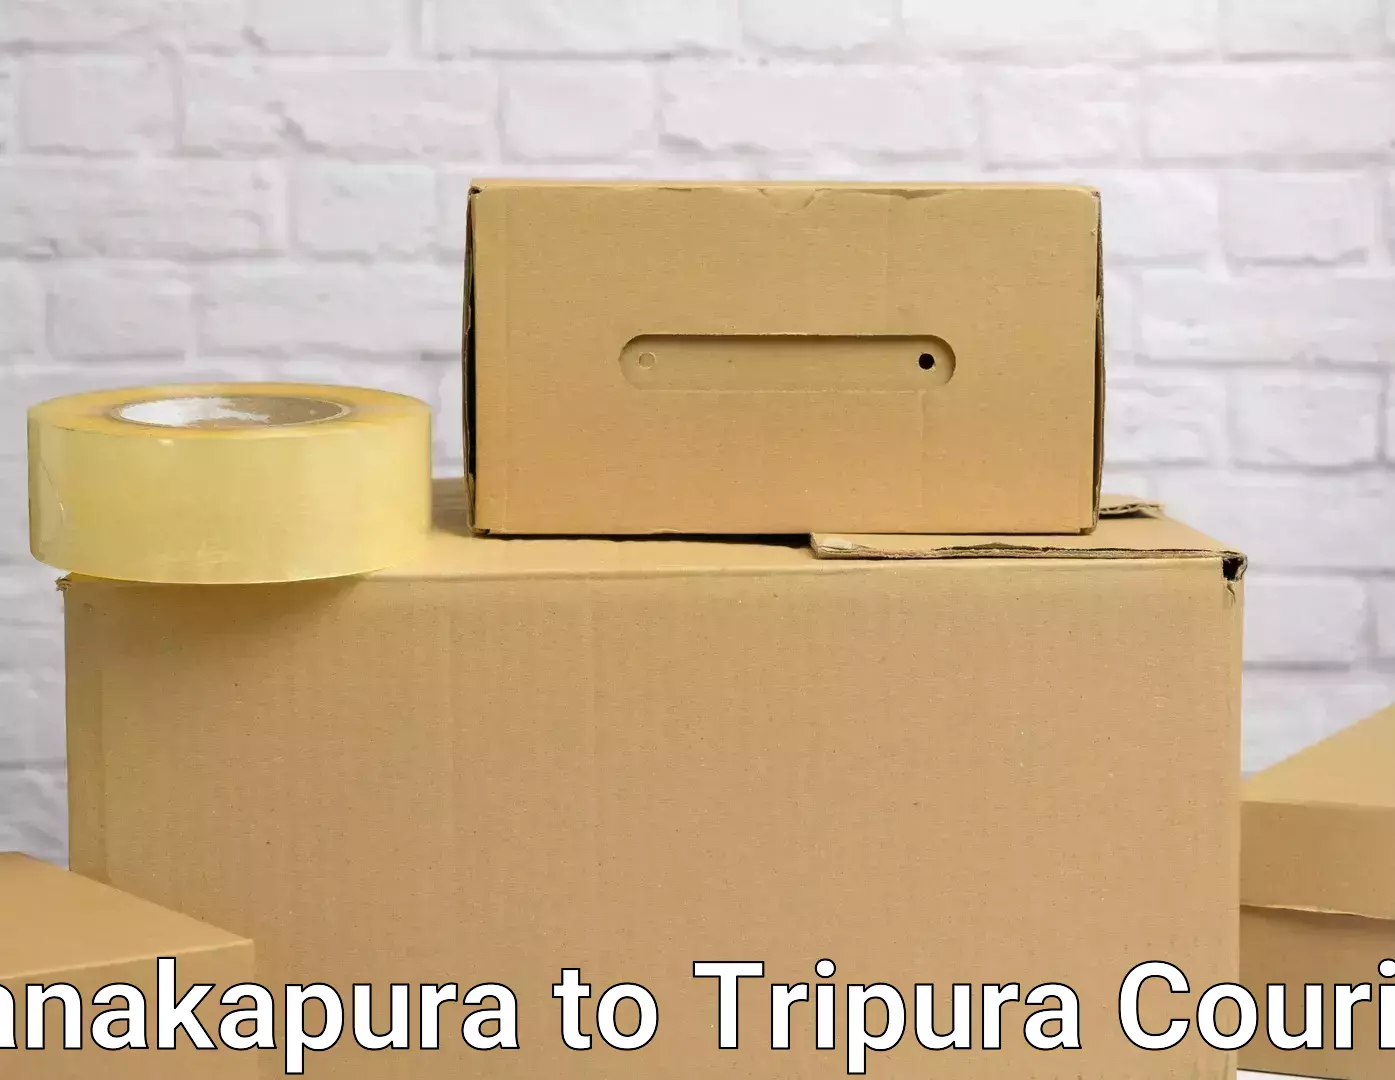 Professional moving company Kanakapura to North Tripura